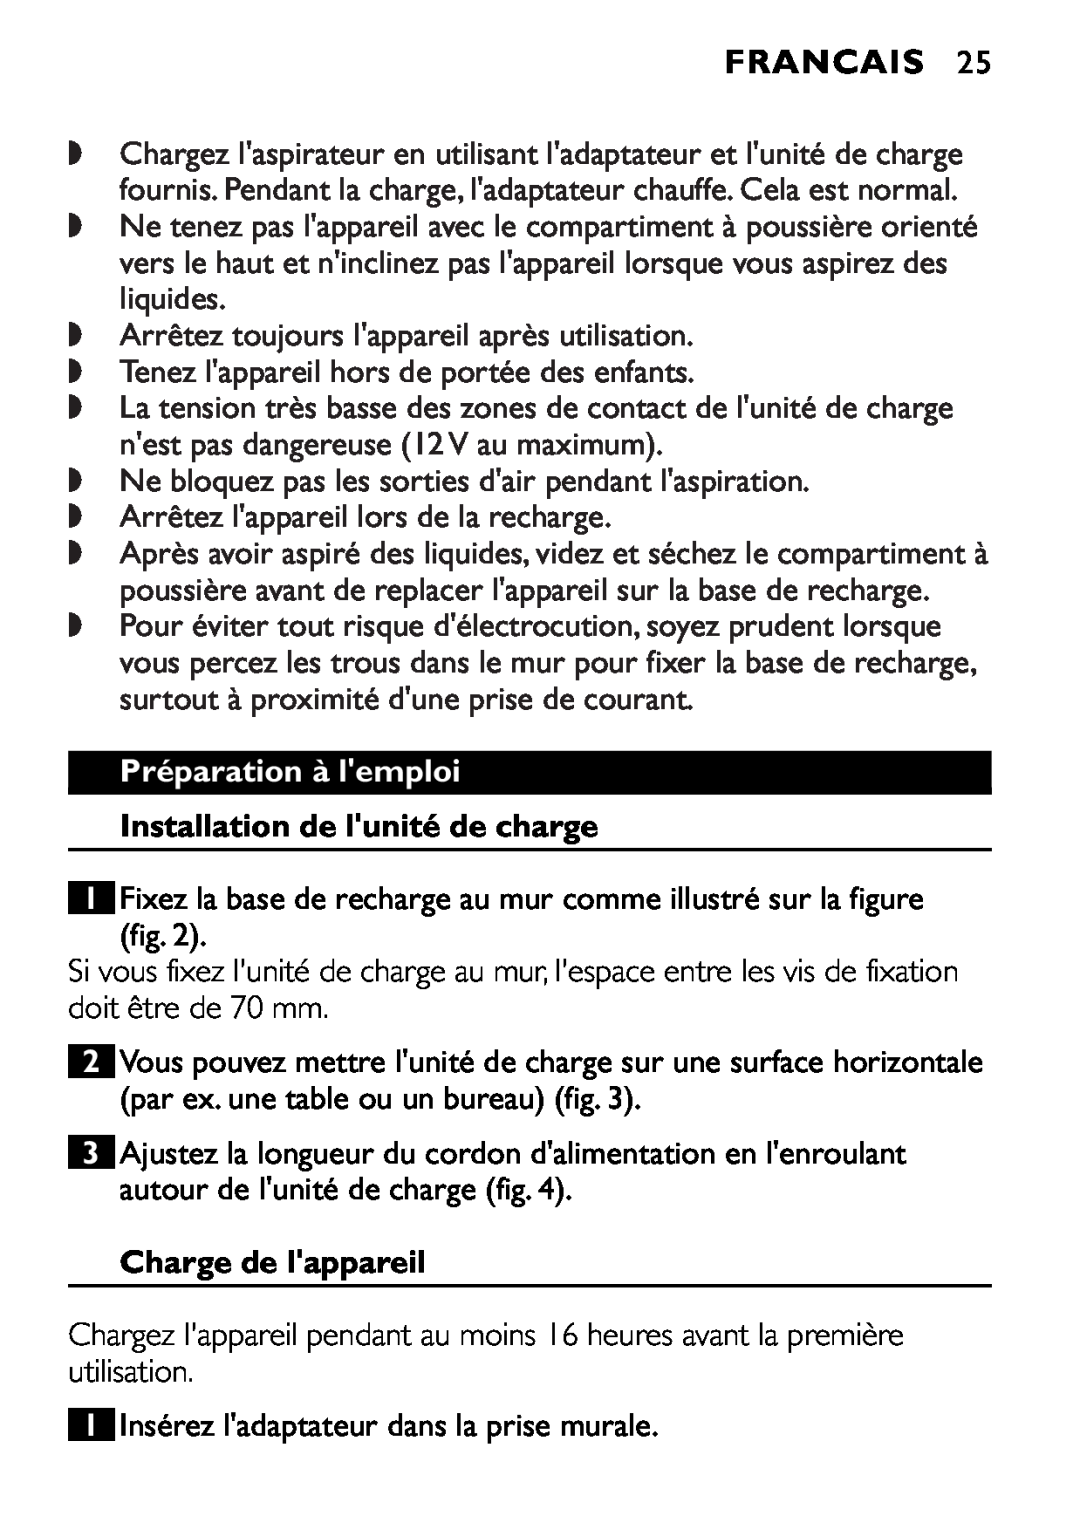 Philips FC6055 manual Francais, Charge de lappareil 